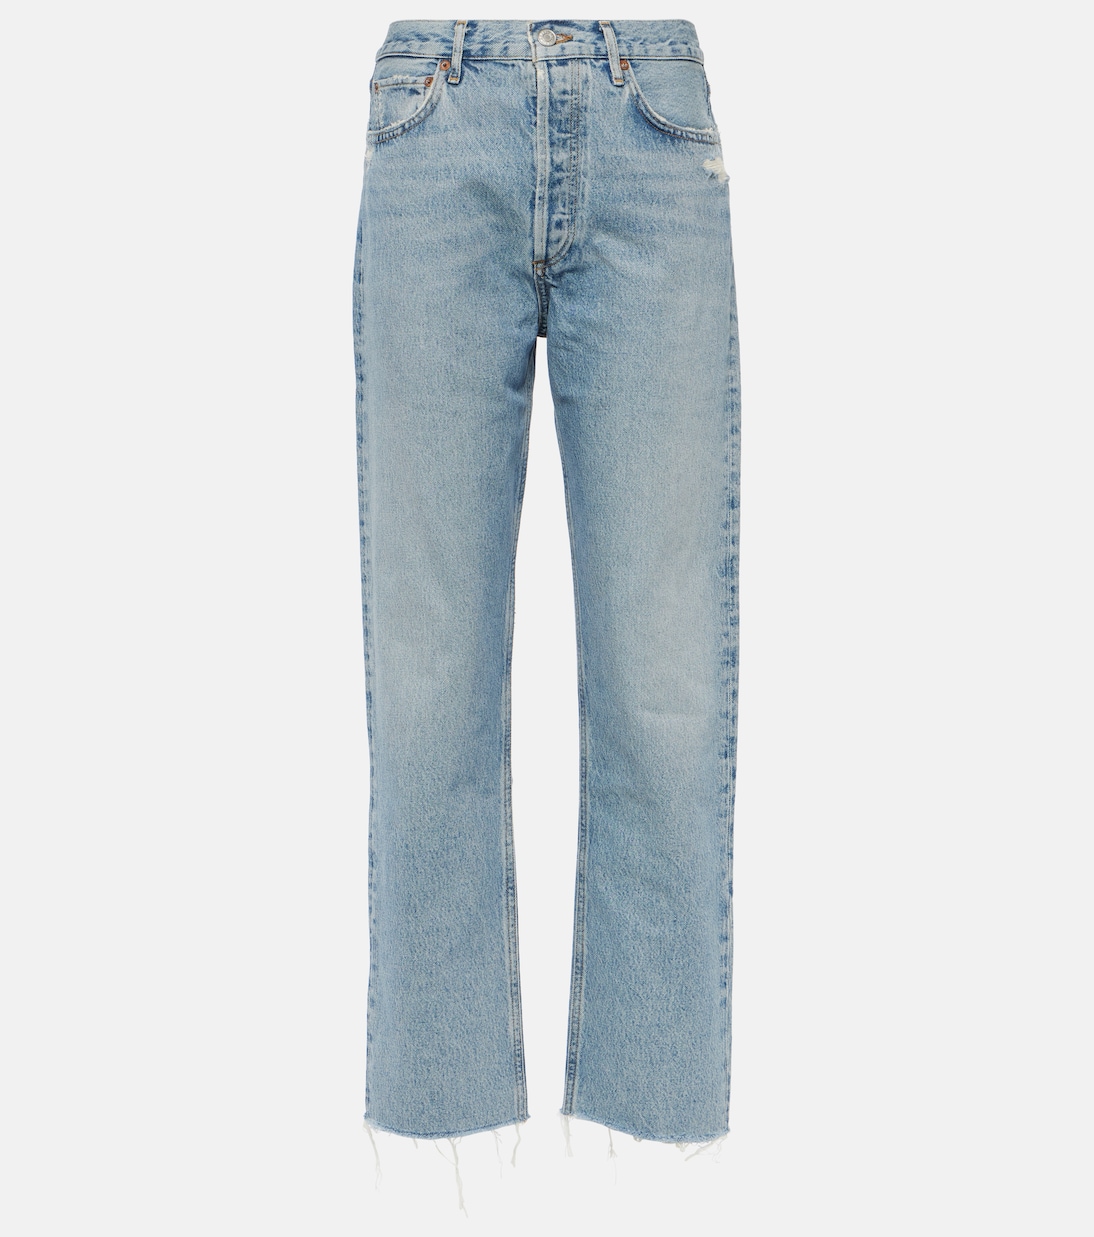 Прямые джинсы с завышенной талией в стиле 90-х годов Agolde, синий